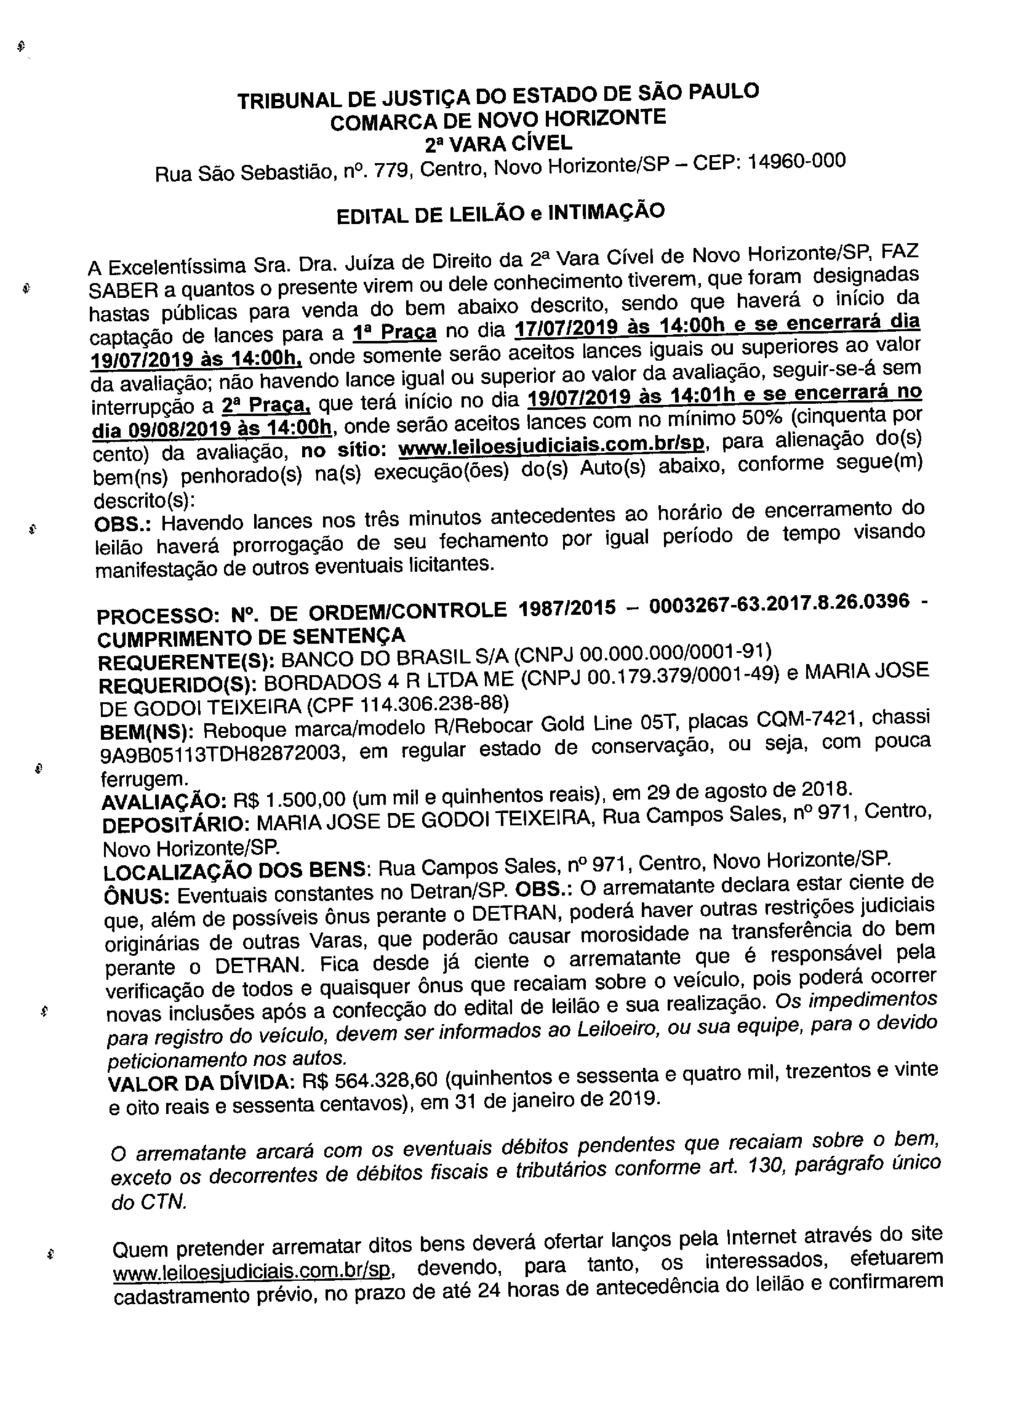 fls. 136 Este documento é cópia do original, assinado digitalmente por LUZIA REGIS DE OLIVEIRA DUARTE, liberado nos autos em 05/06/2019 às 16:27.